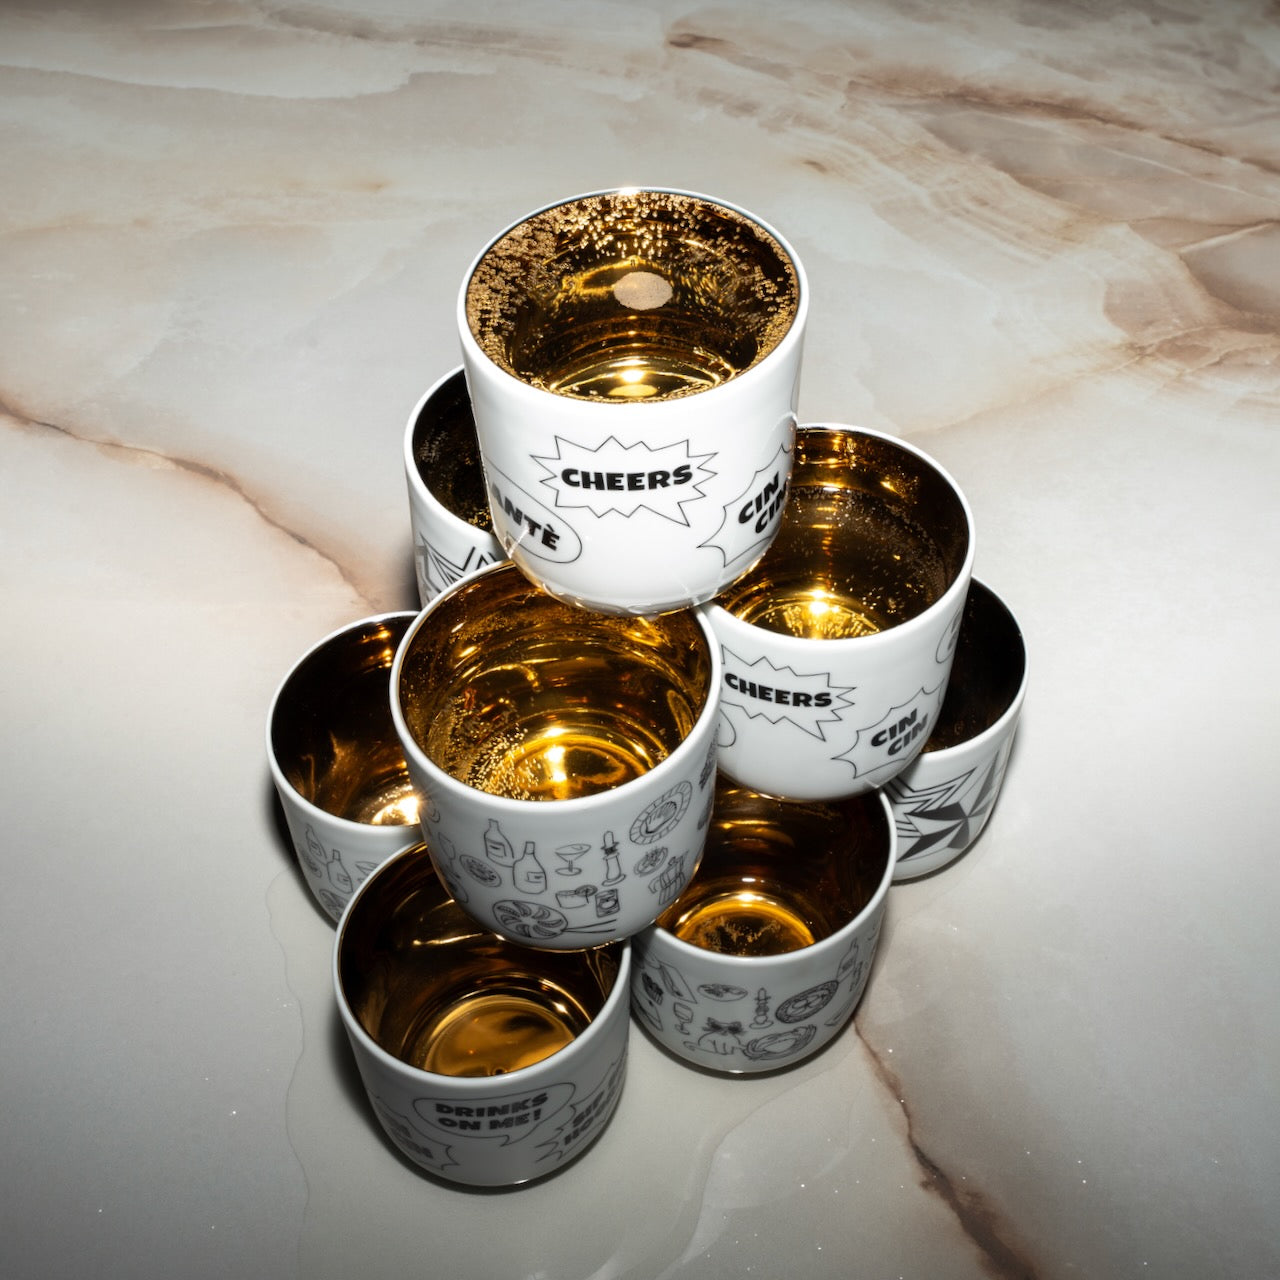 Cheers: Porzellanbecher für Champagner und Kaffee mit Goldfilling